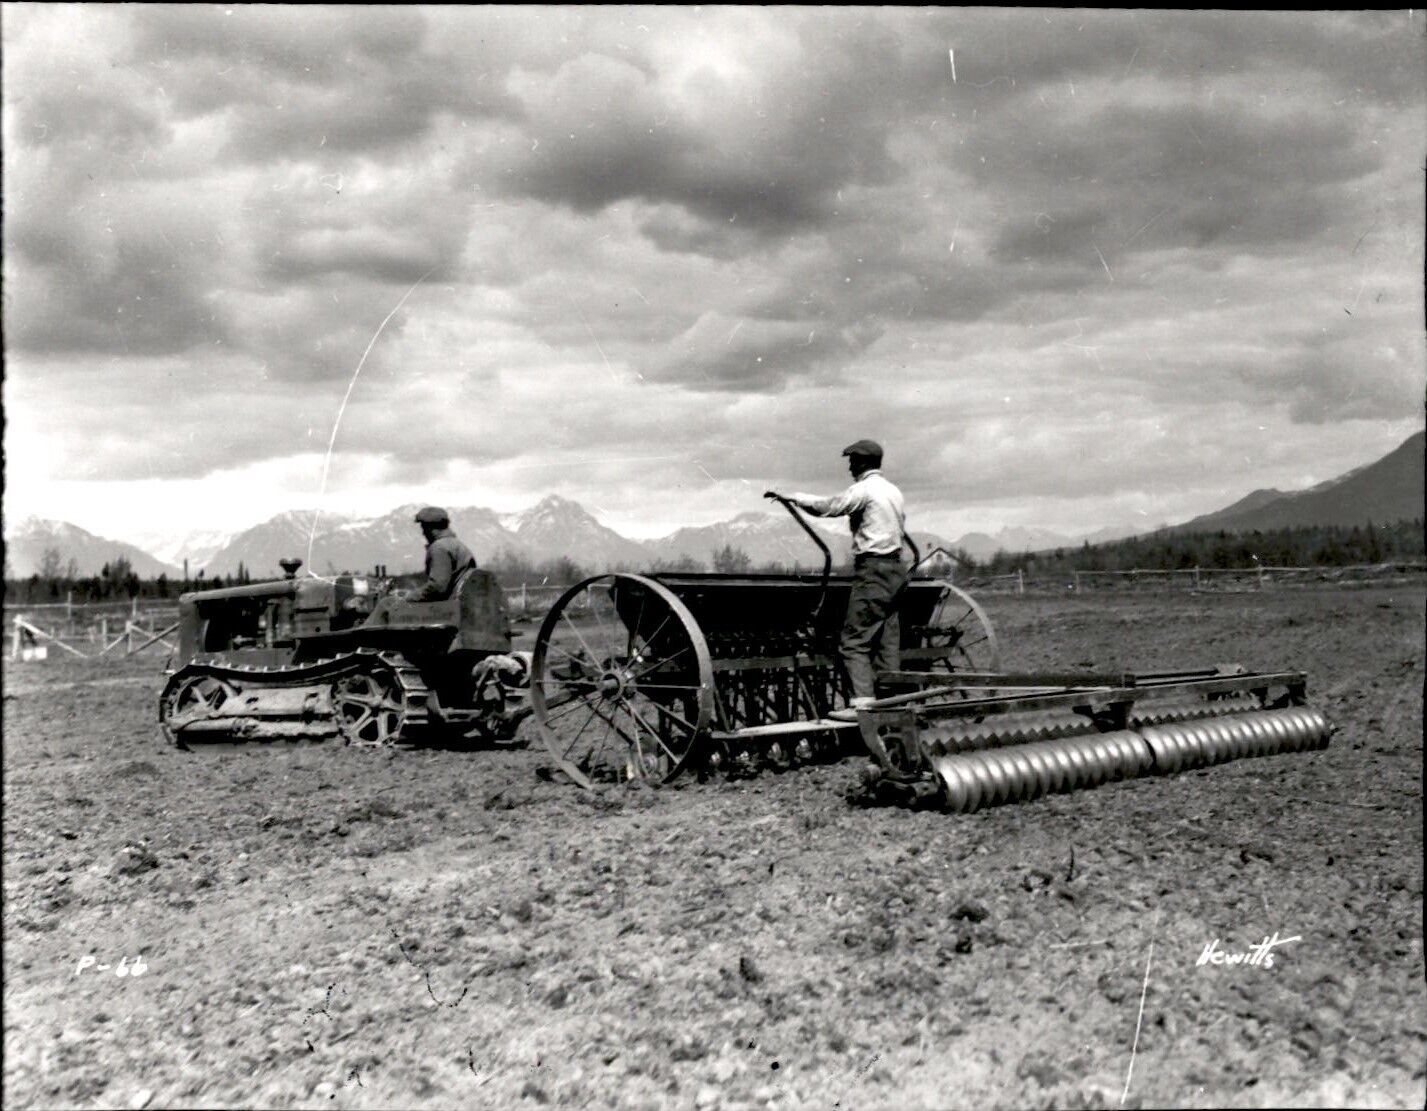 LG38 1935 2nd Gen Restrike Photo ALASKAN FARMER PULLING DISC HARROW WITH TRACTOR